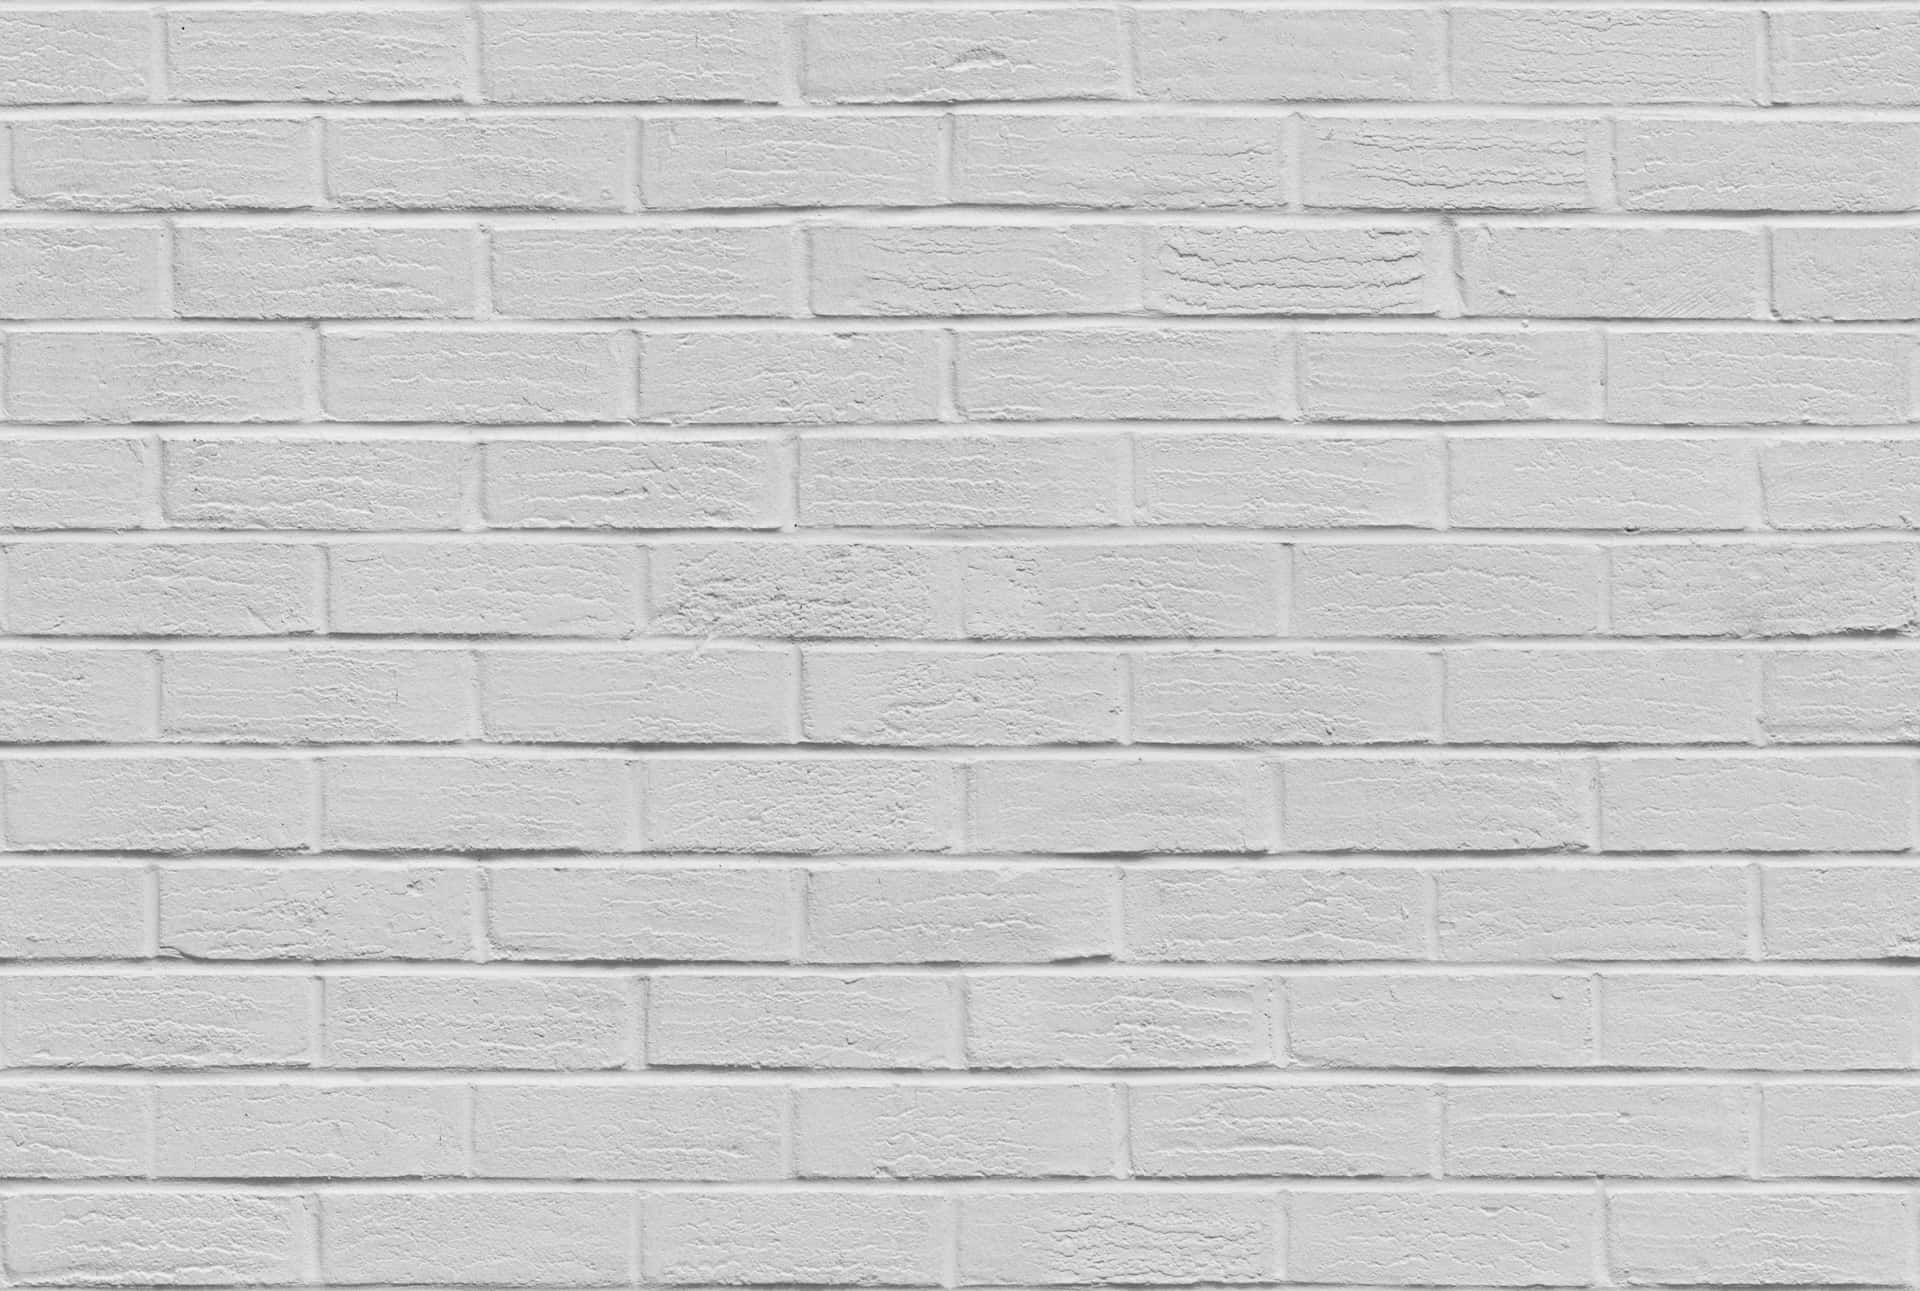 Caption: Minimalistic White Wall Background